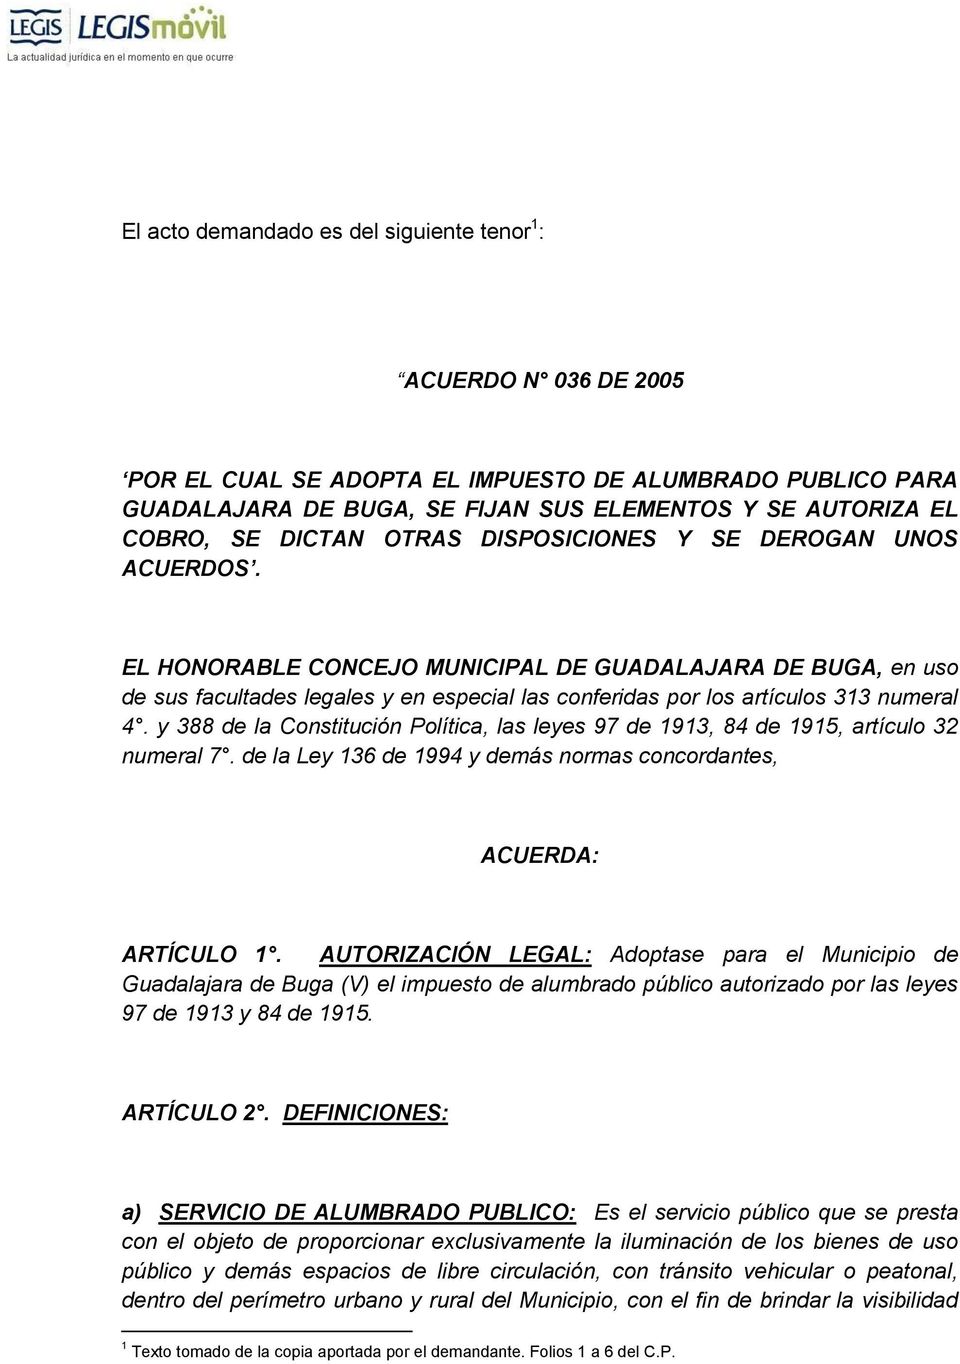 EL HONORABLE CONCEJO MUNICIPAL DE GUADALAJARA DE BUGA, en uso de sus facultades legales y en especial las conferidas por los artículos 313 numeral 4.